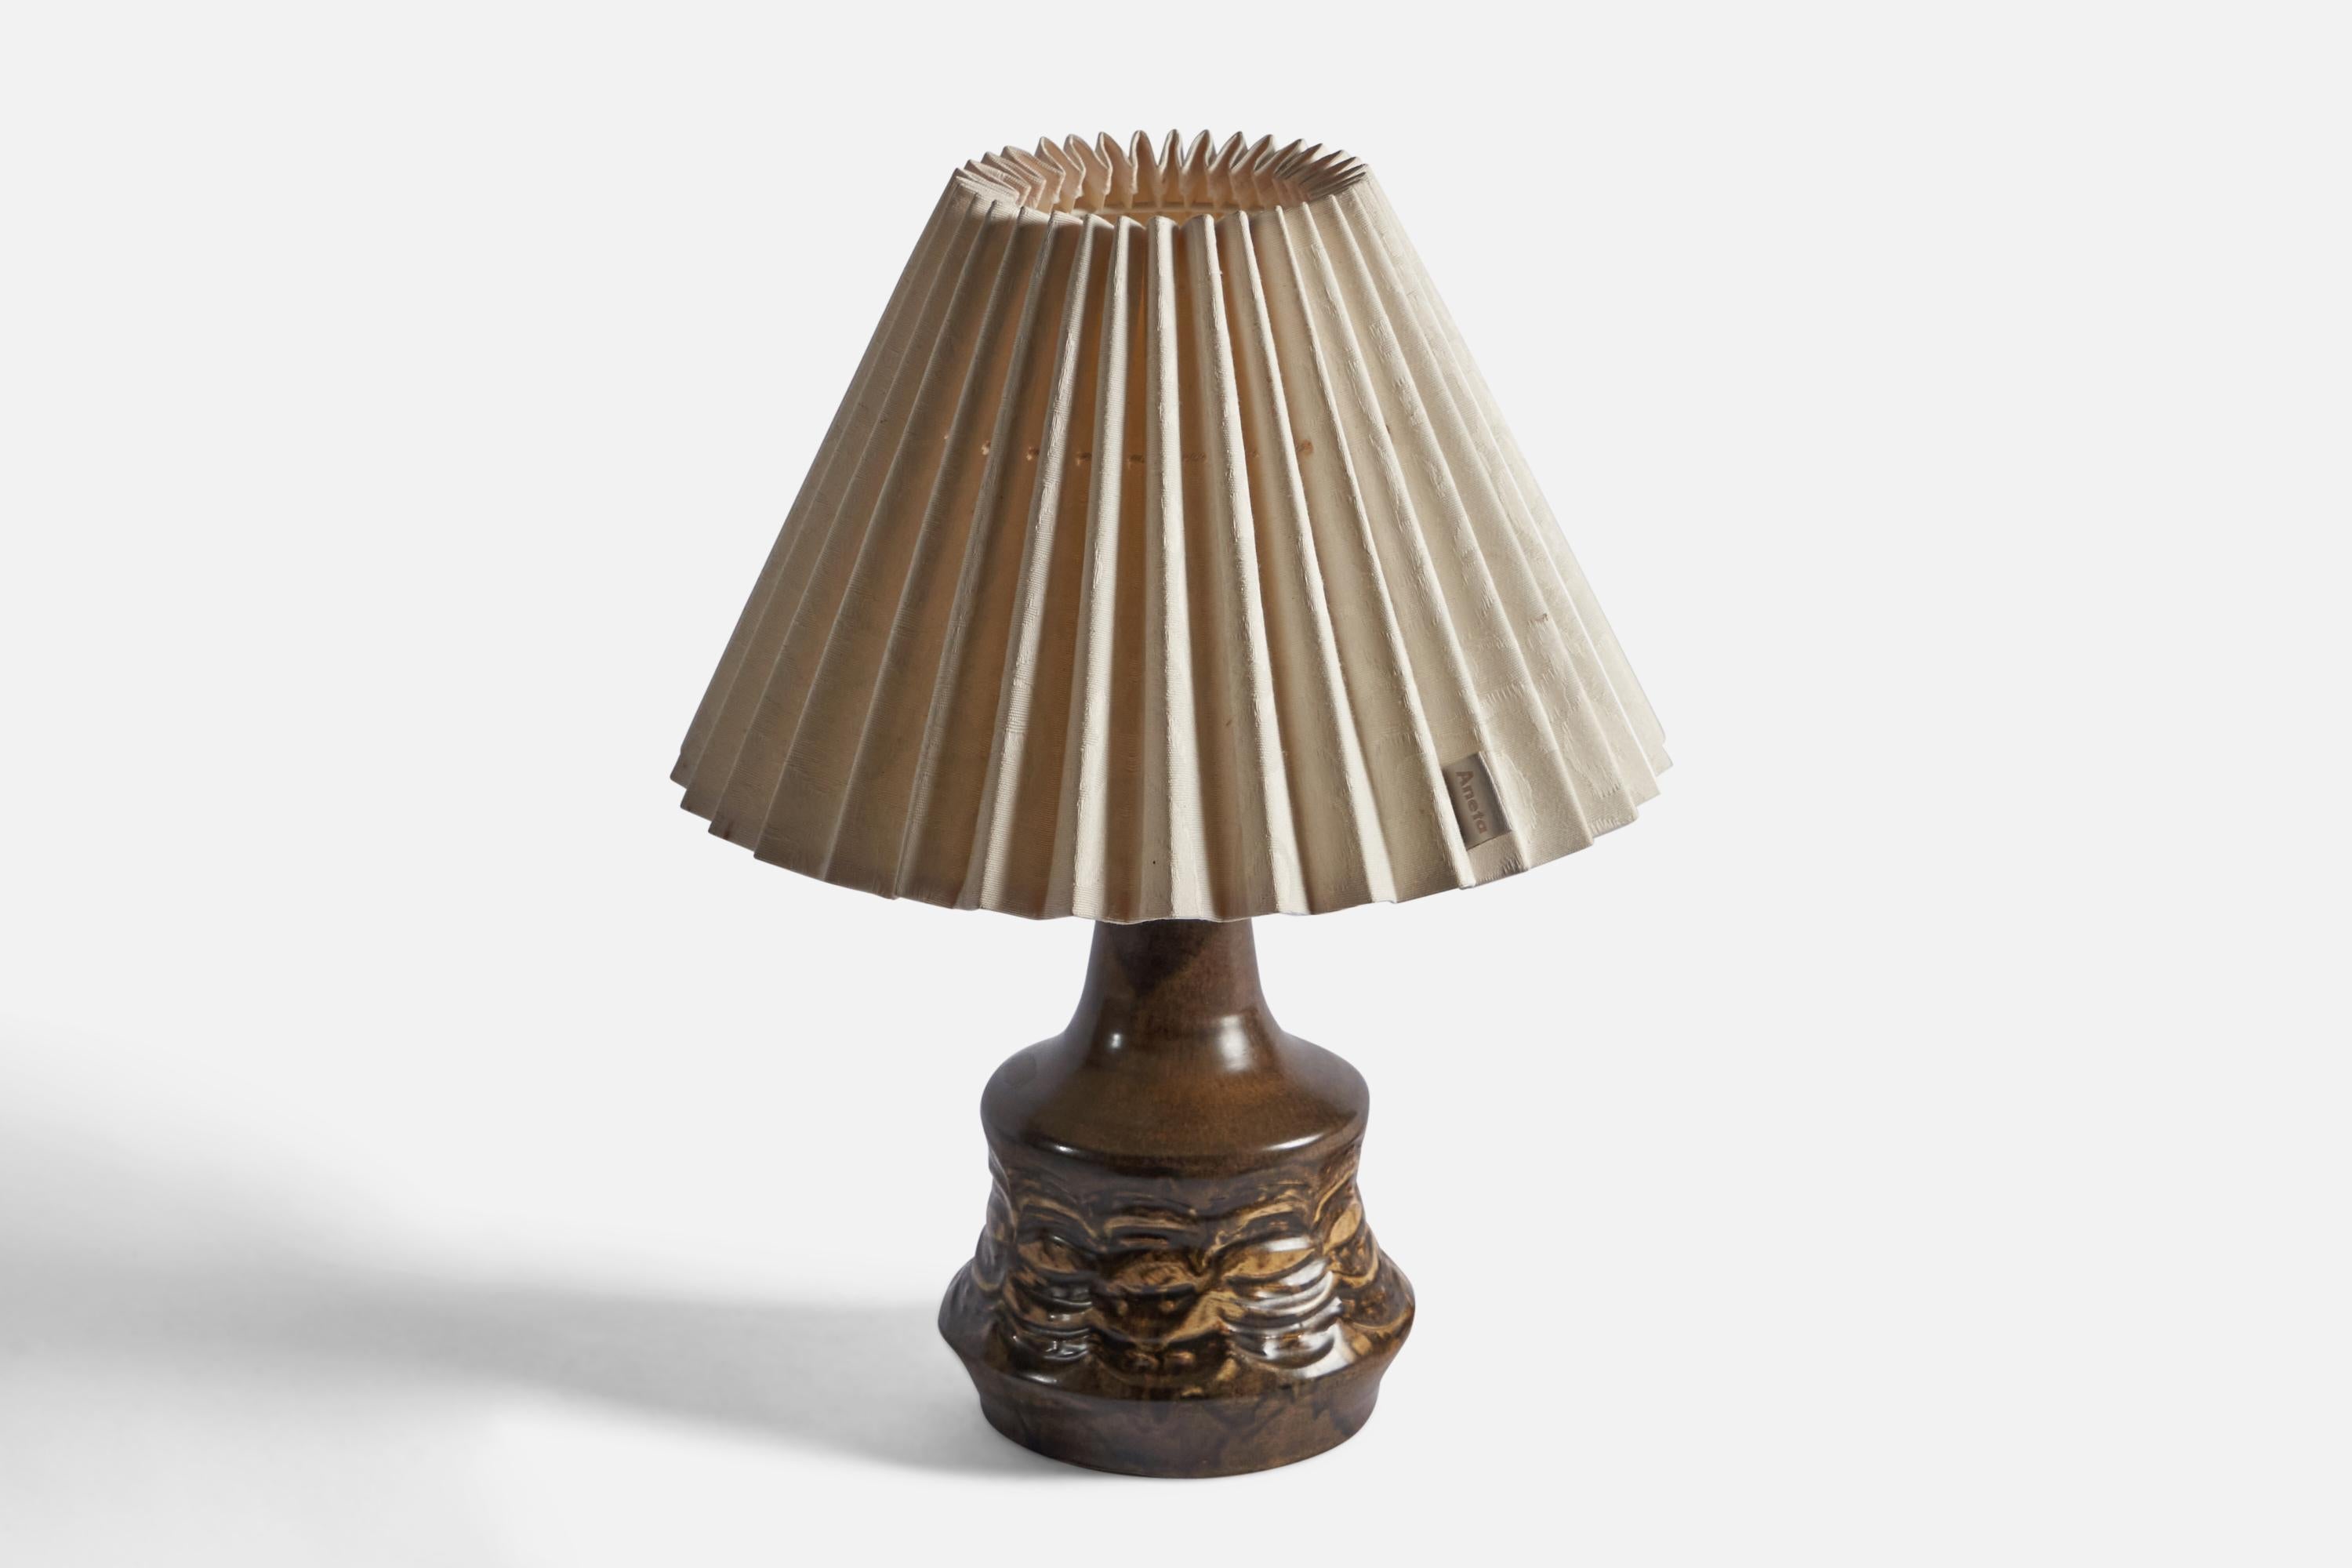 Tischlampe aus braun glasiertem Steingut, entworfen und hergestellt von Løvemose, Dänemark, um 1960.

Gesamtabmessungen: 15,75